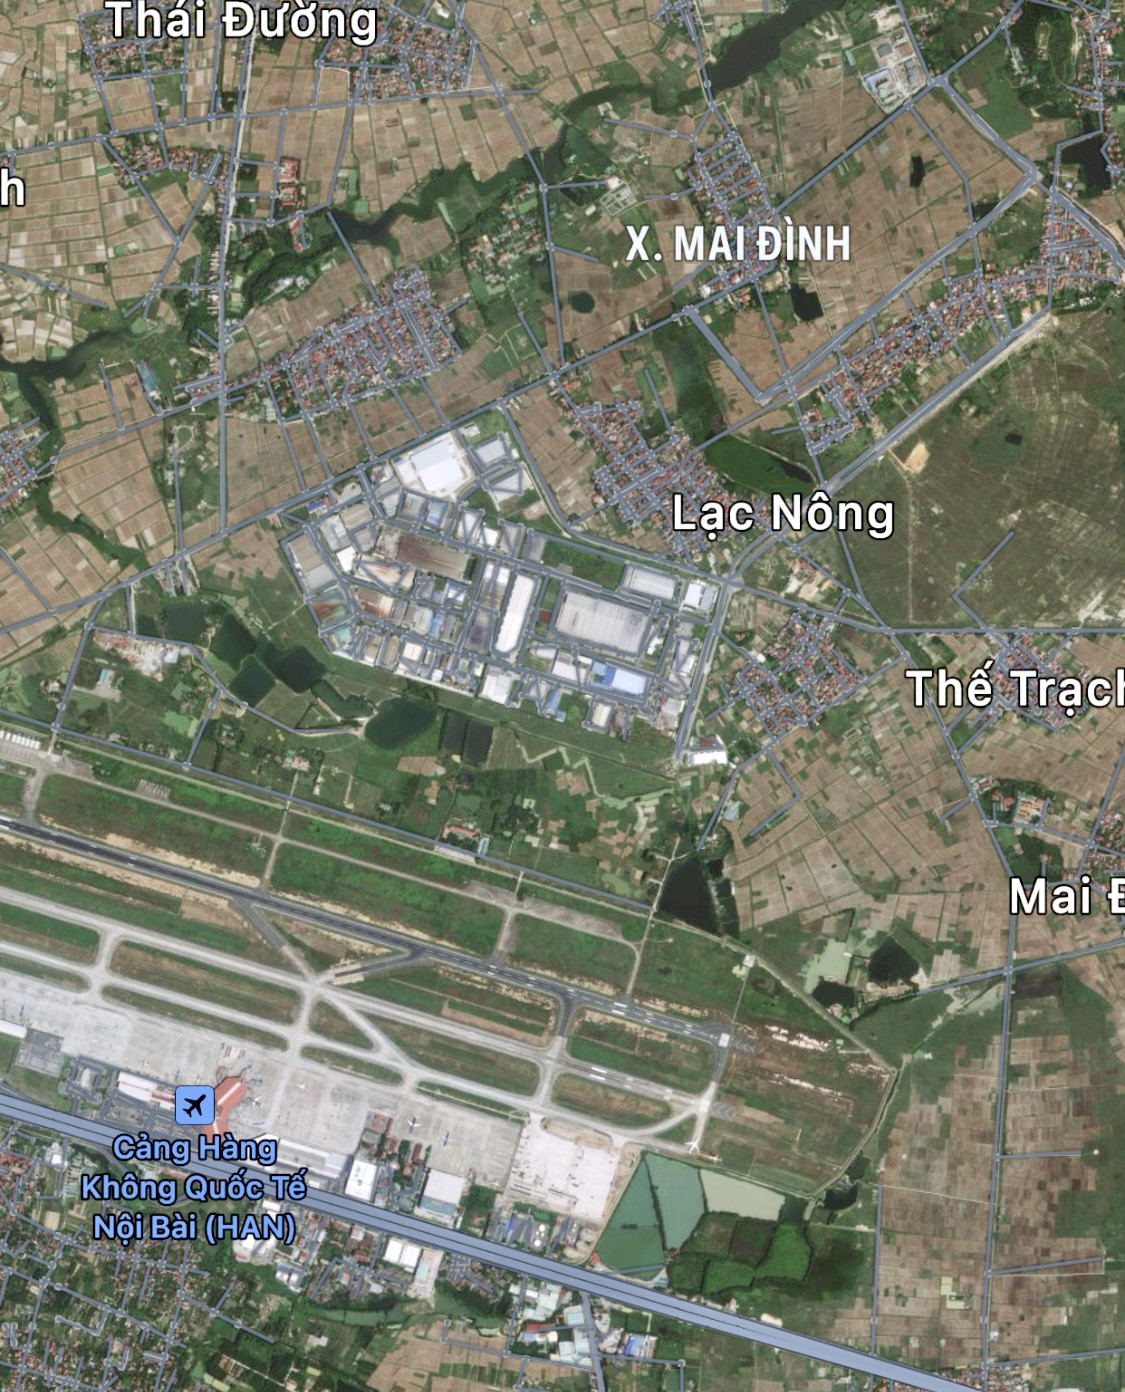 Hà Nội sắp đấu giá gần 1.200m2 đất gần sân bay Nội Bài